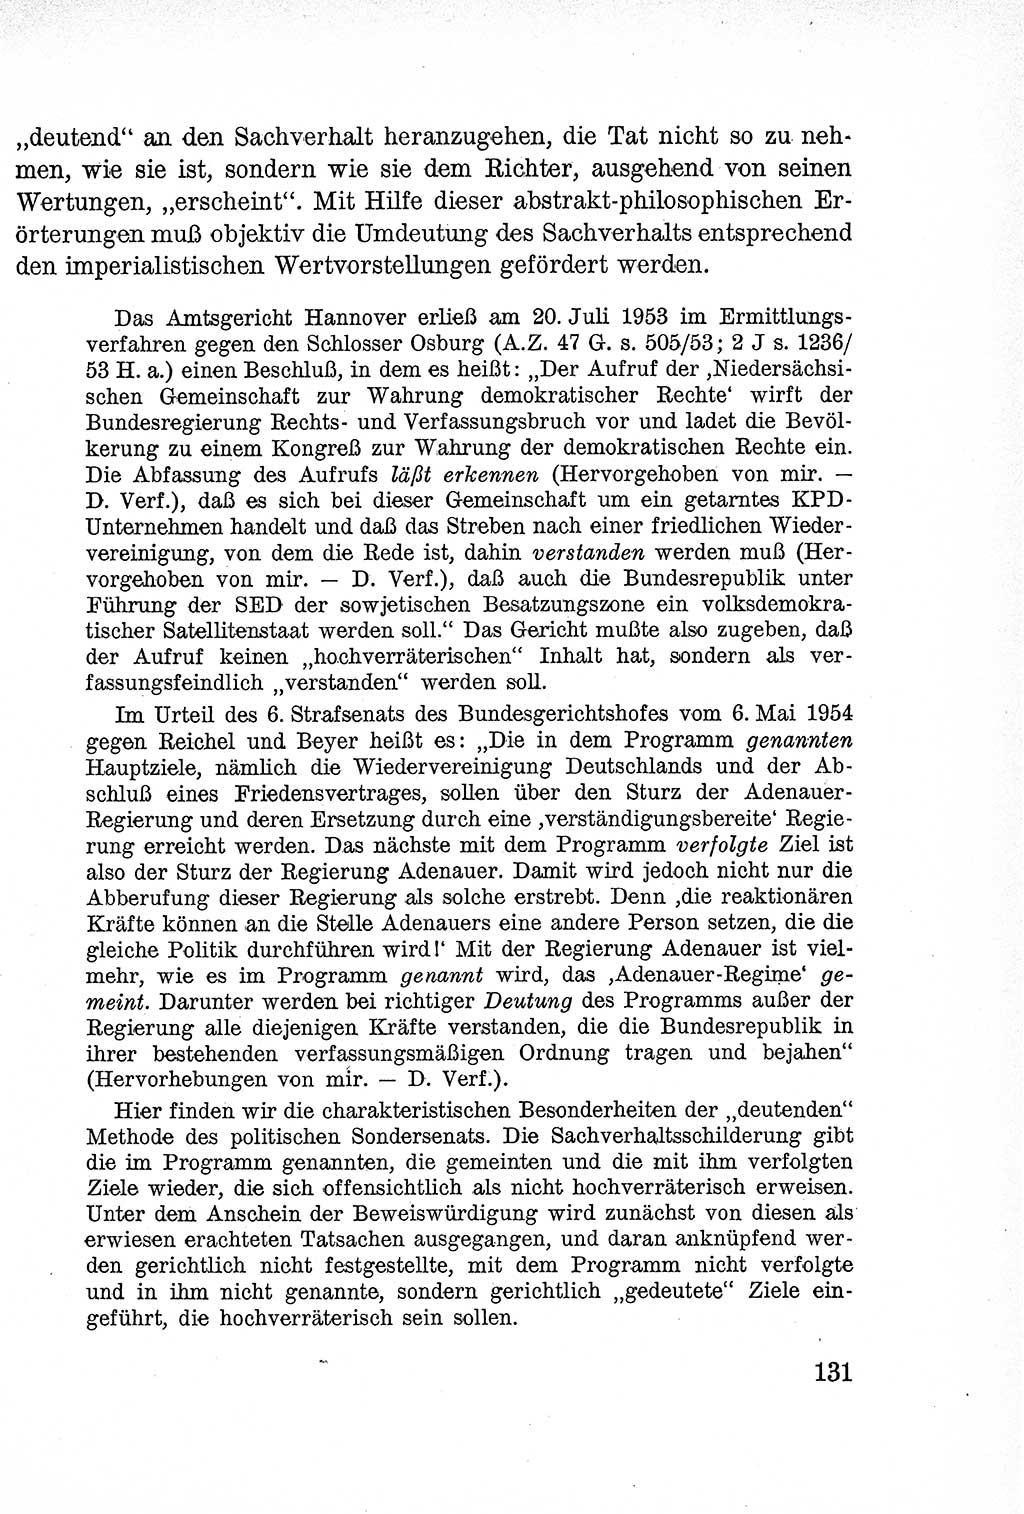 Lehrbuch des Strafrechts der Deutschen Demokratischen Republik (DDR), Allgemeiner Teil 1957, Seite 131 (Lb. Strafr. DDR AT 1957, S. 131)